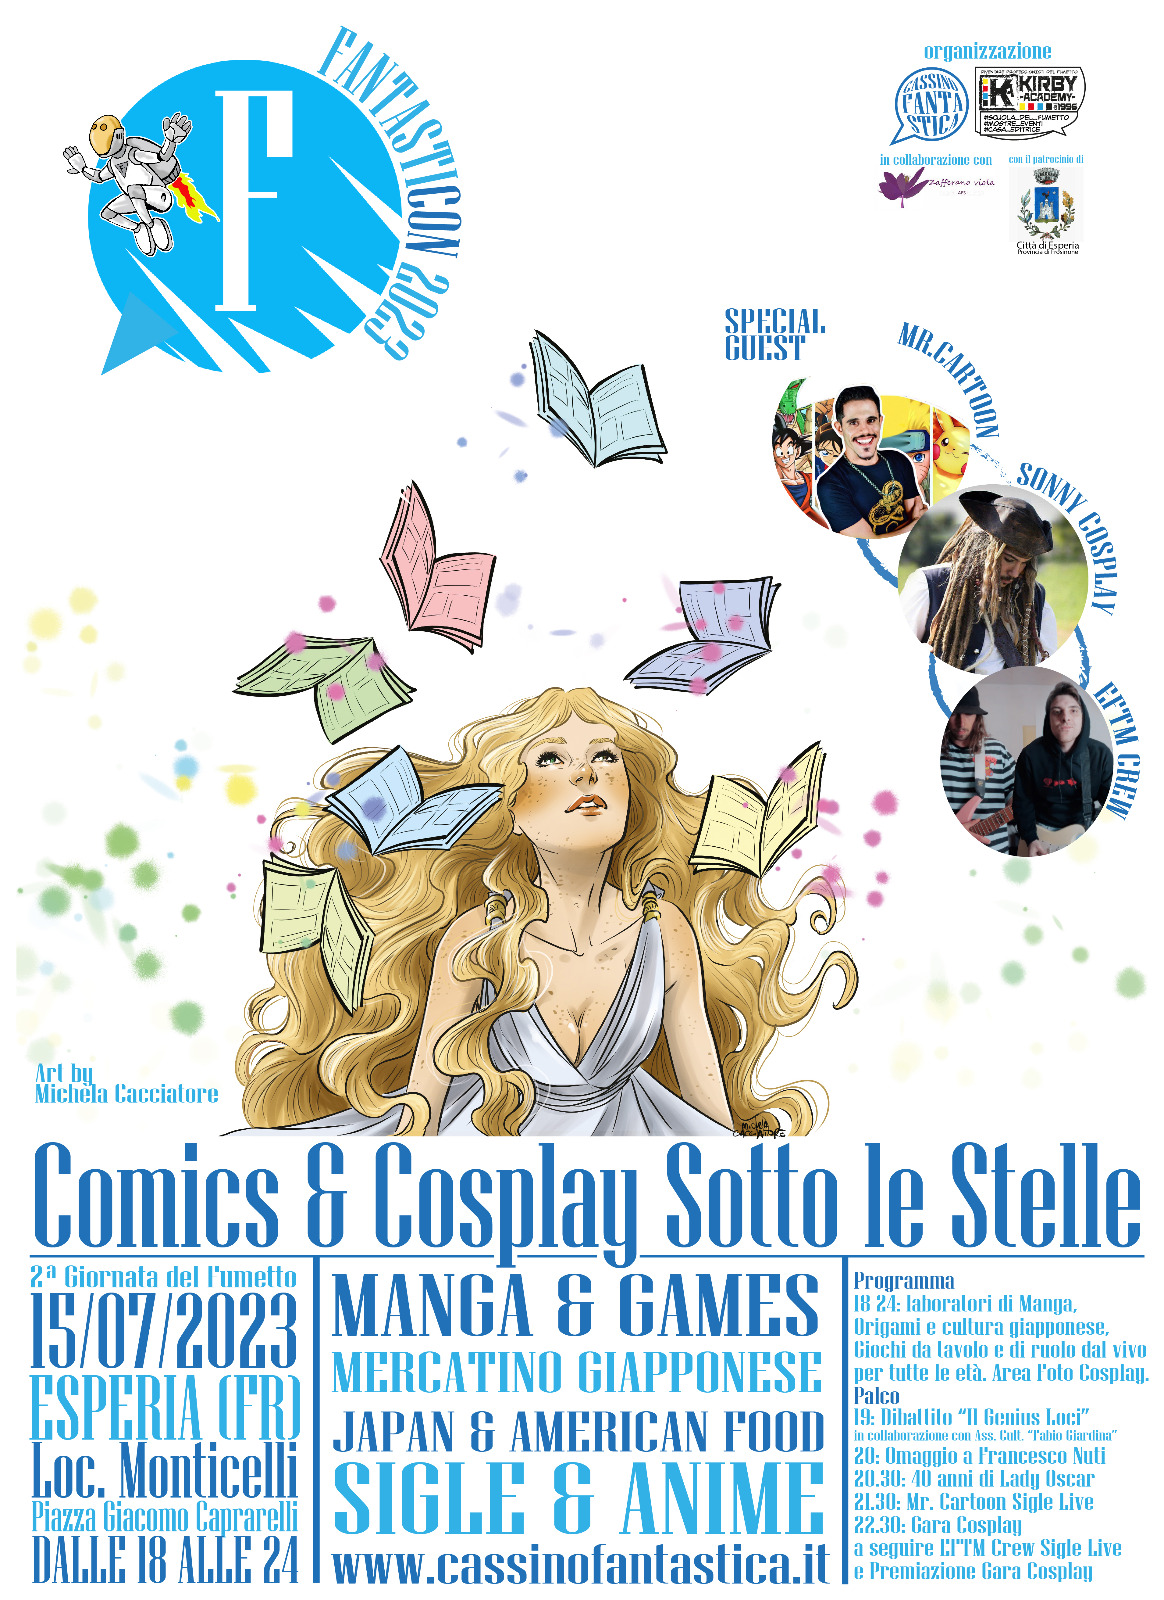 FantastiCon “Comics & Cosplay sotto le stelle” a Esperia: 15 luglio 2023